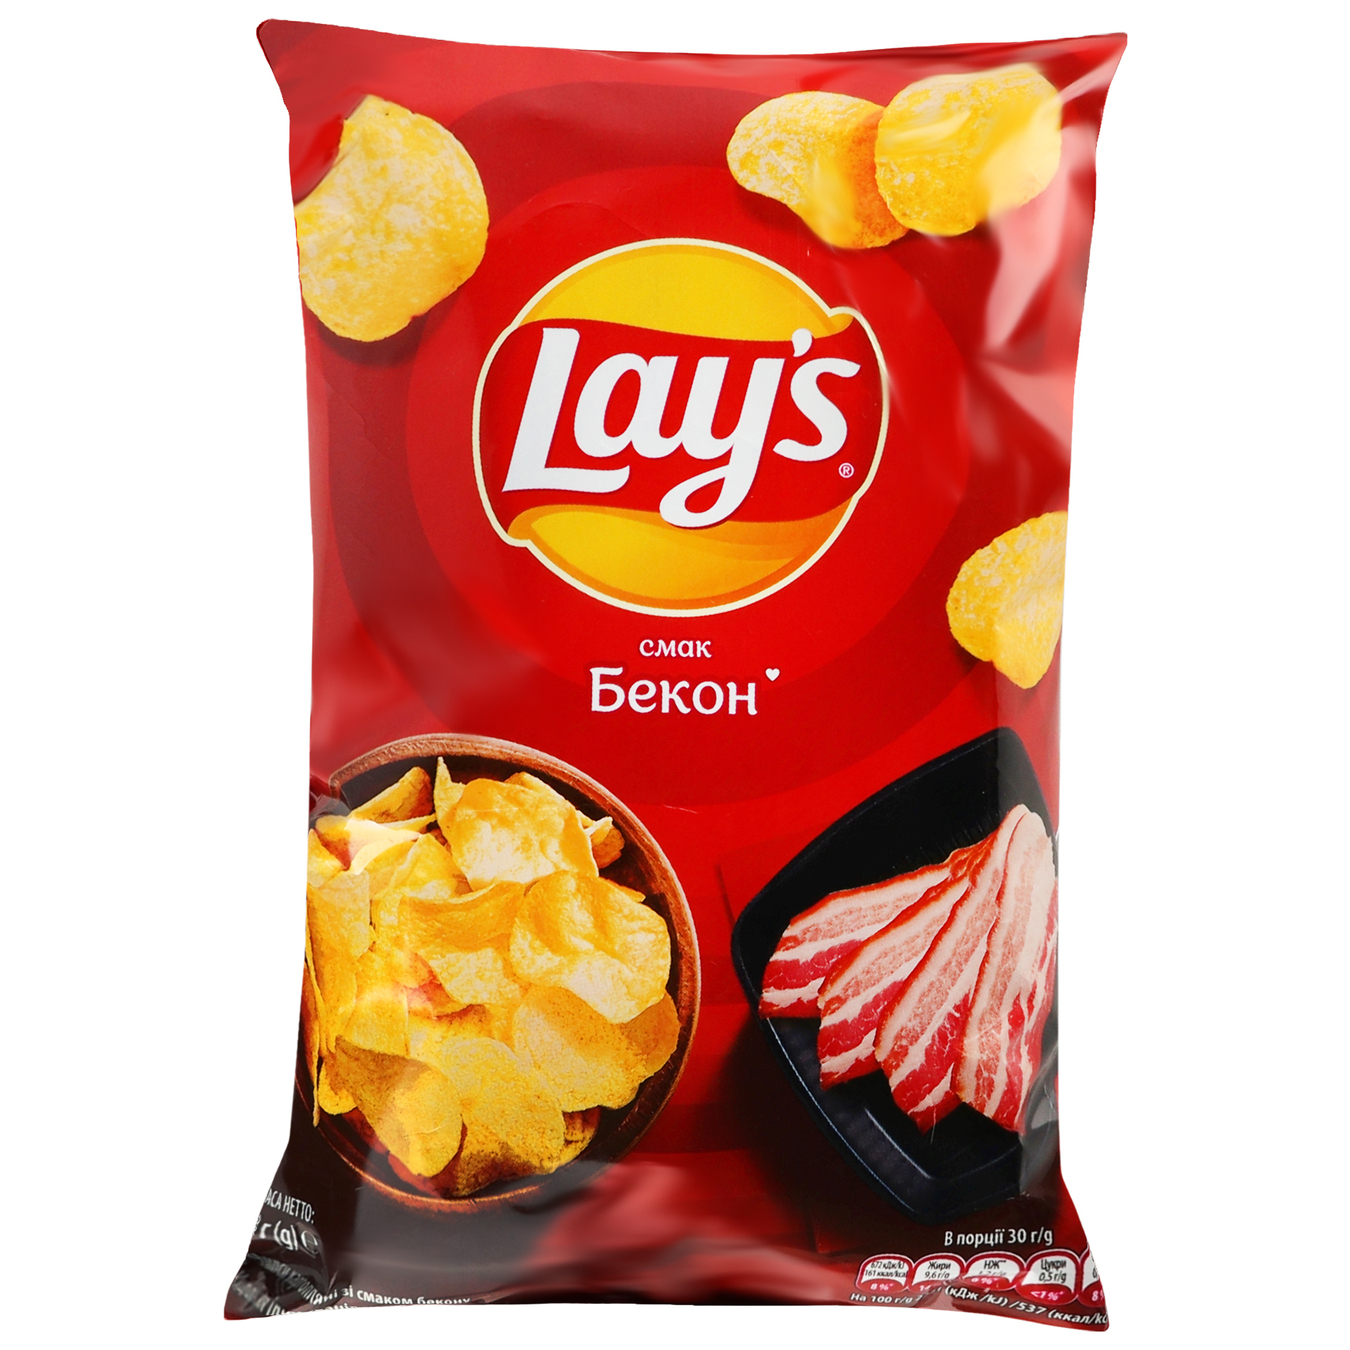 Potato chips Lay's bacon flavor 60g